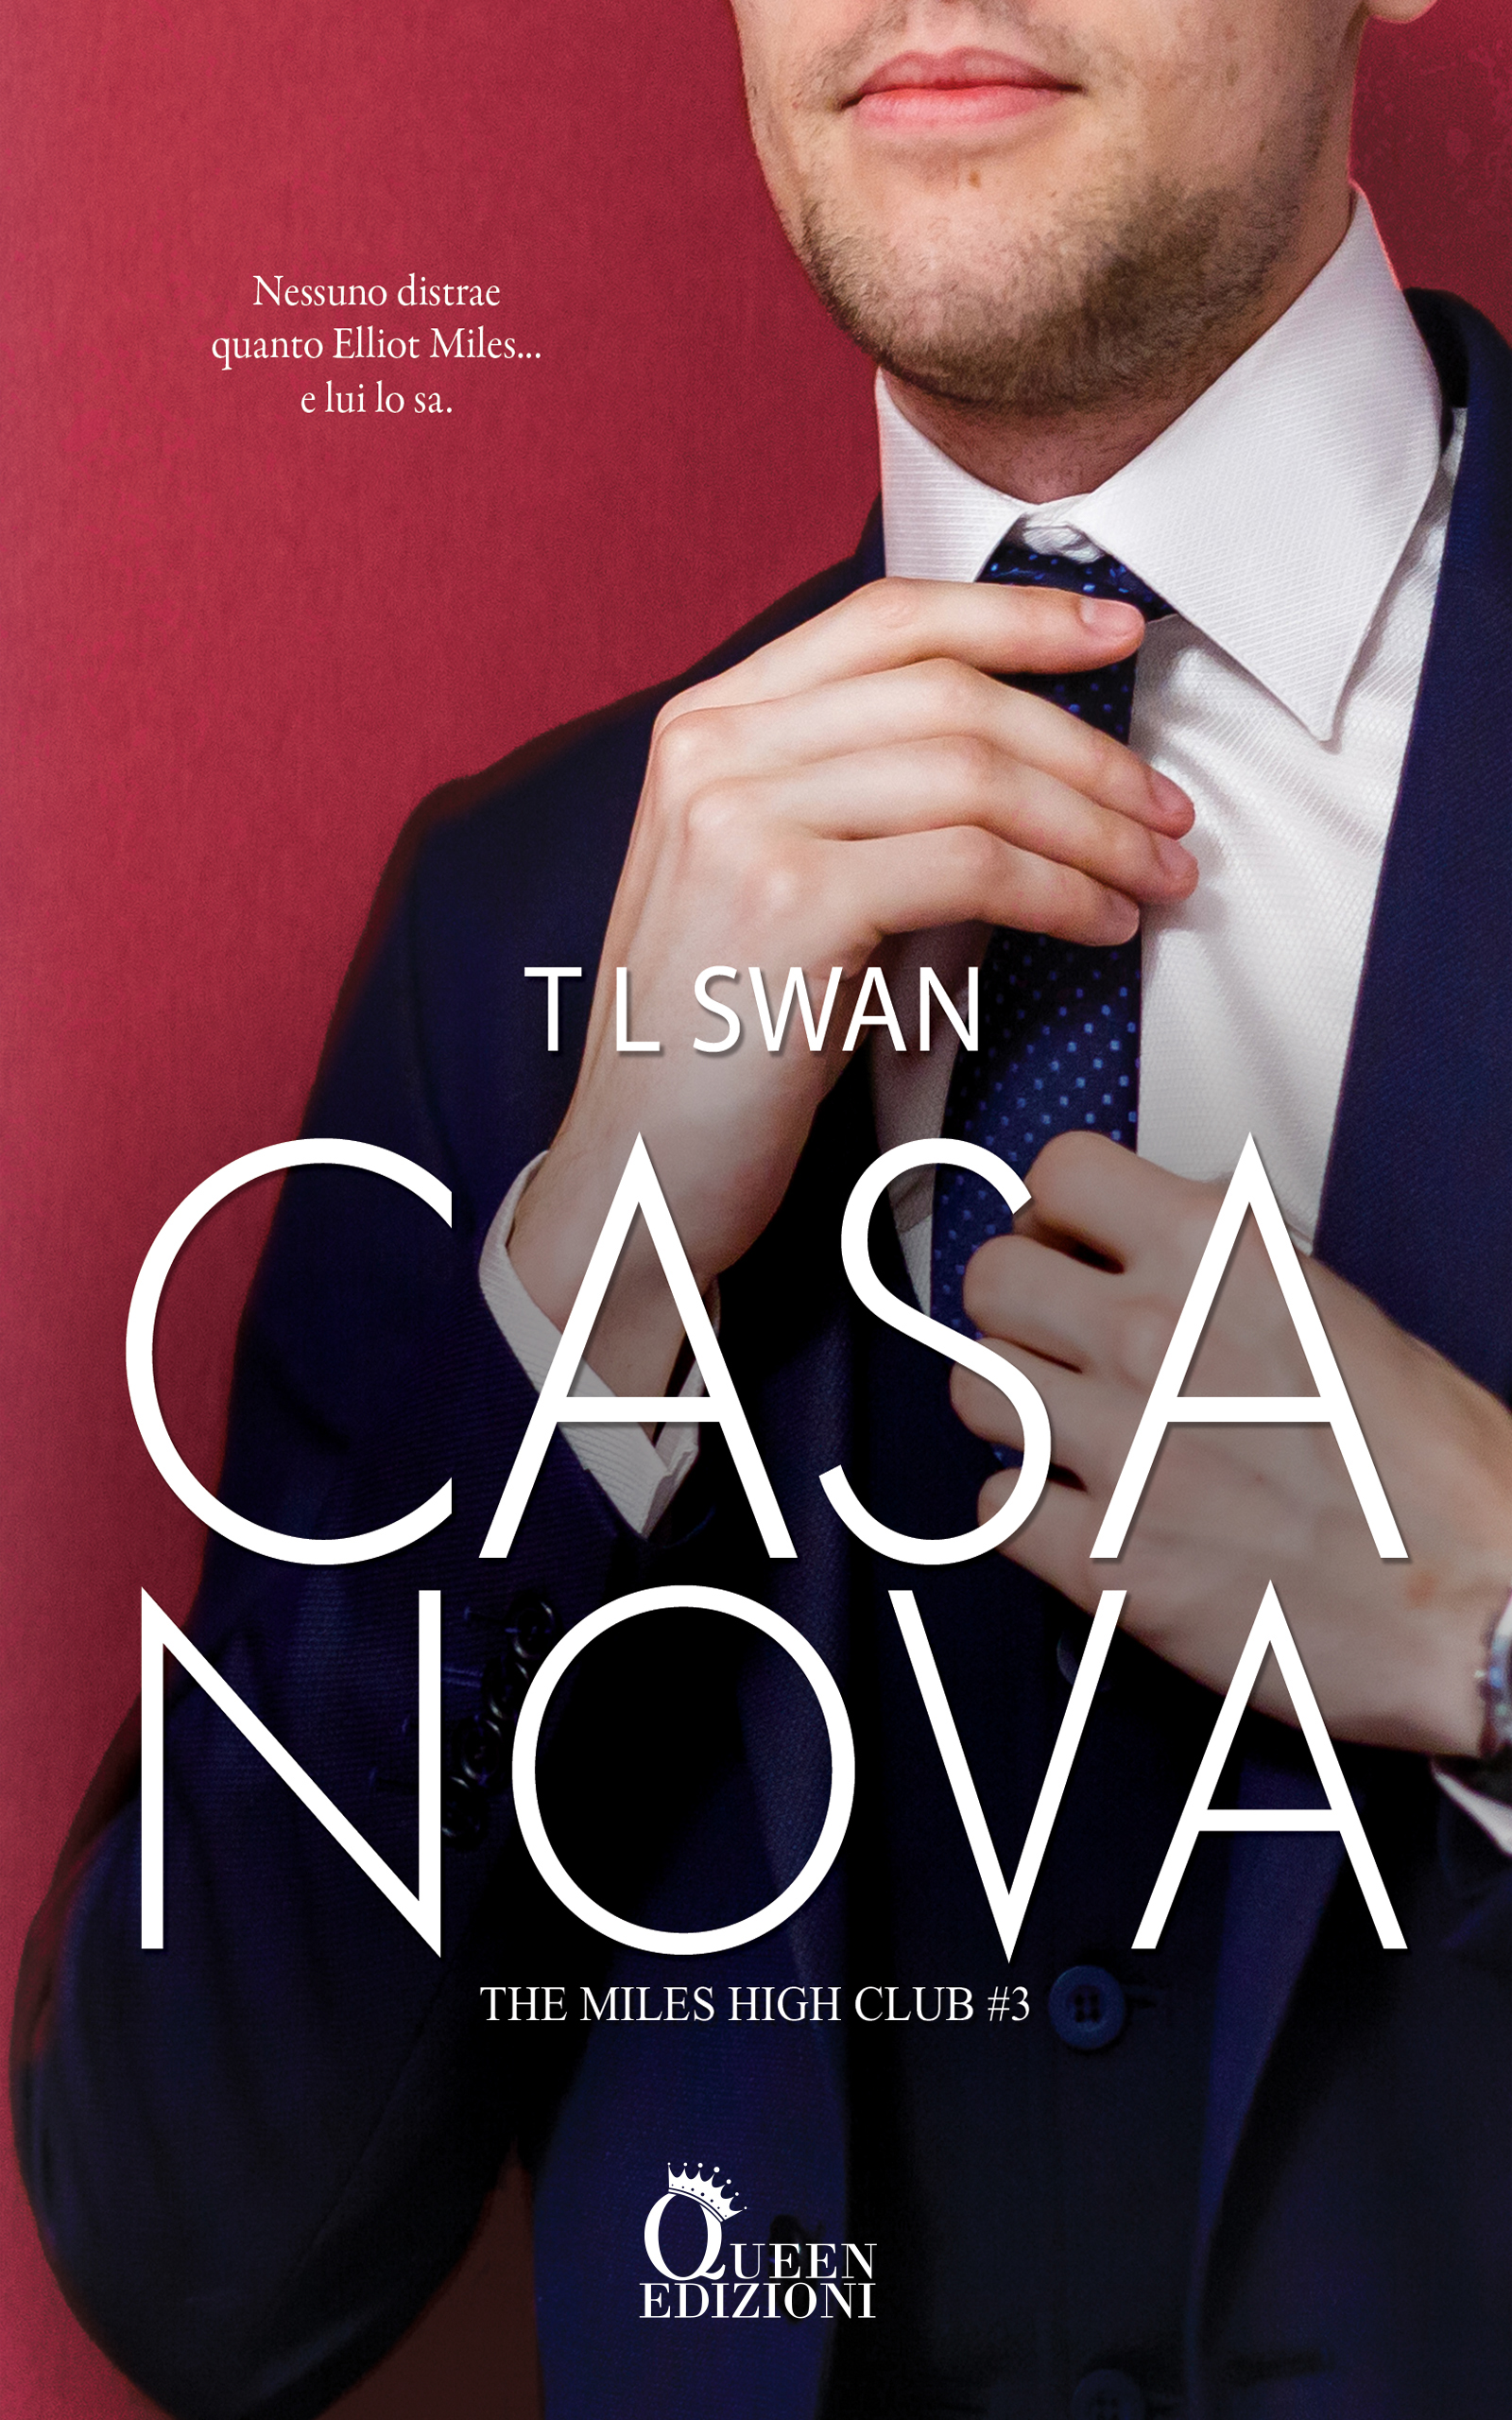 Casanova_TL_SWAN_xSITO (1)